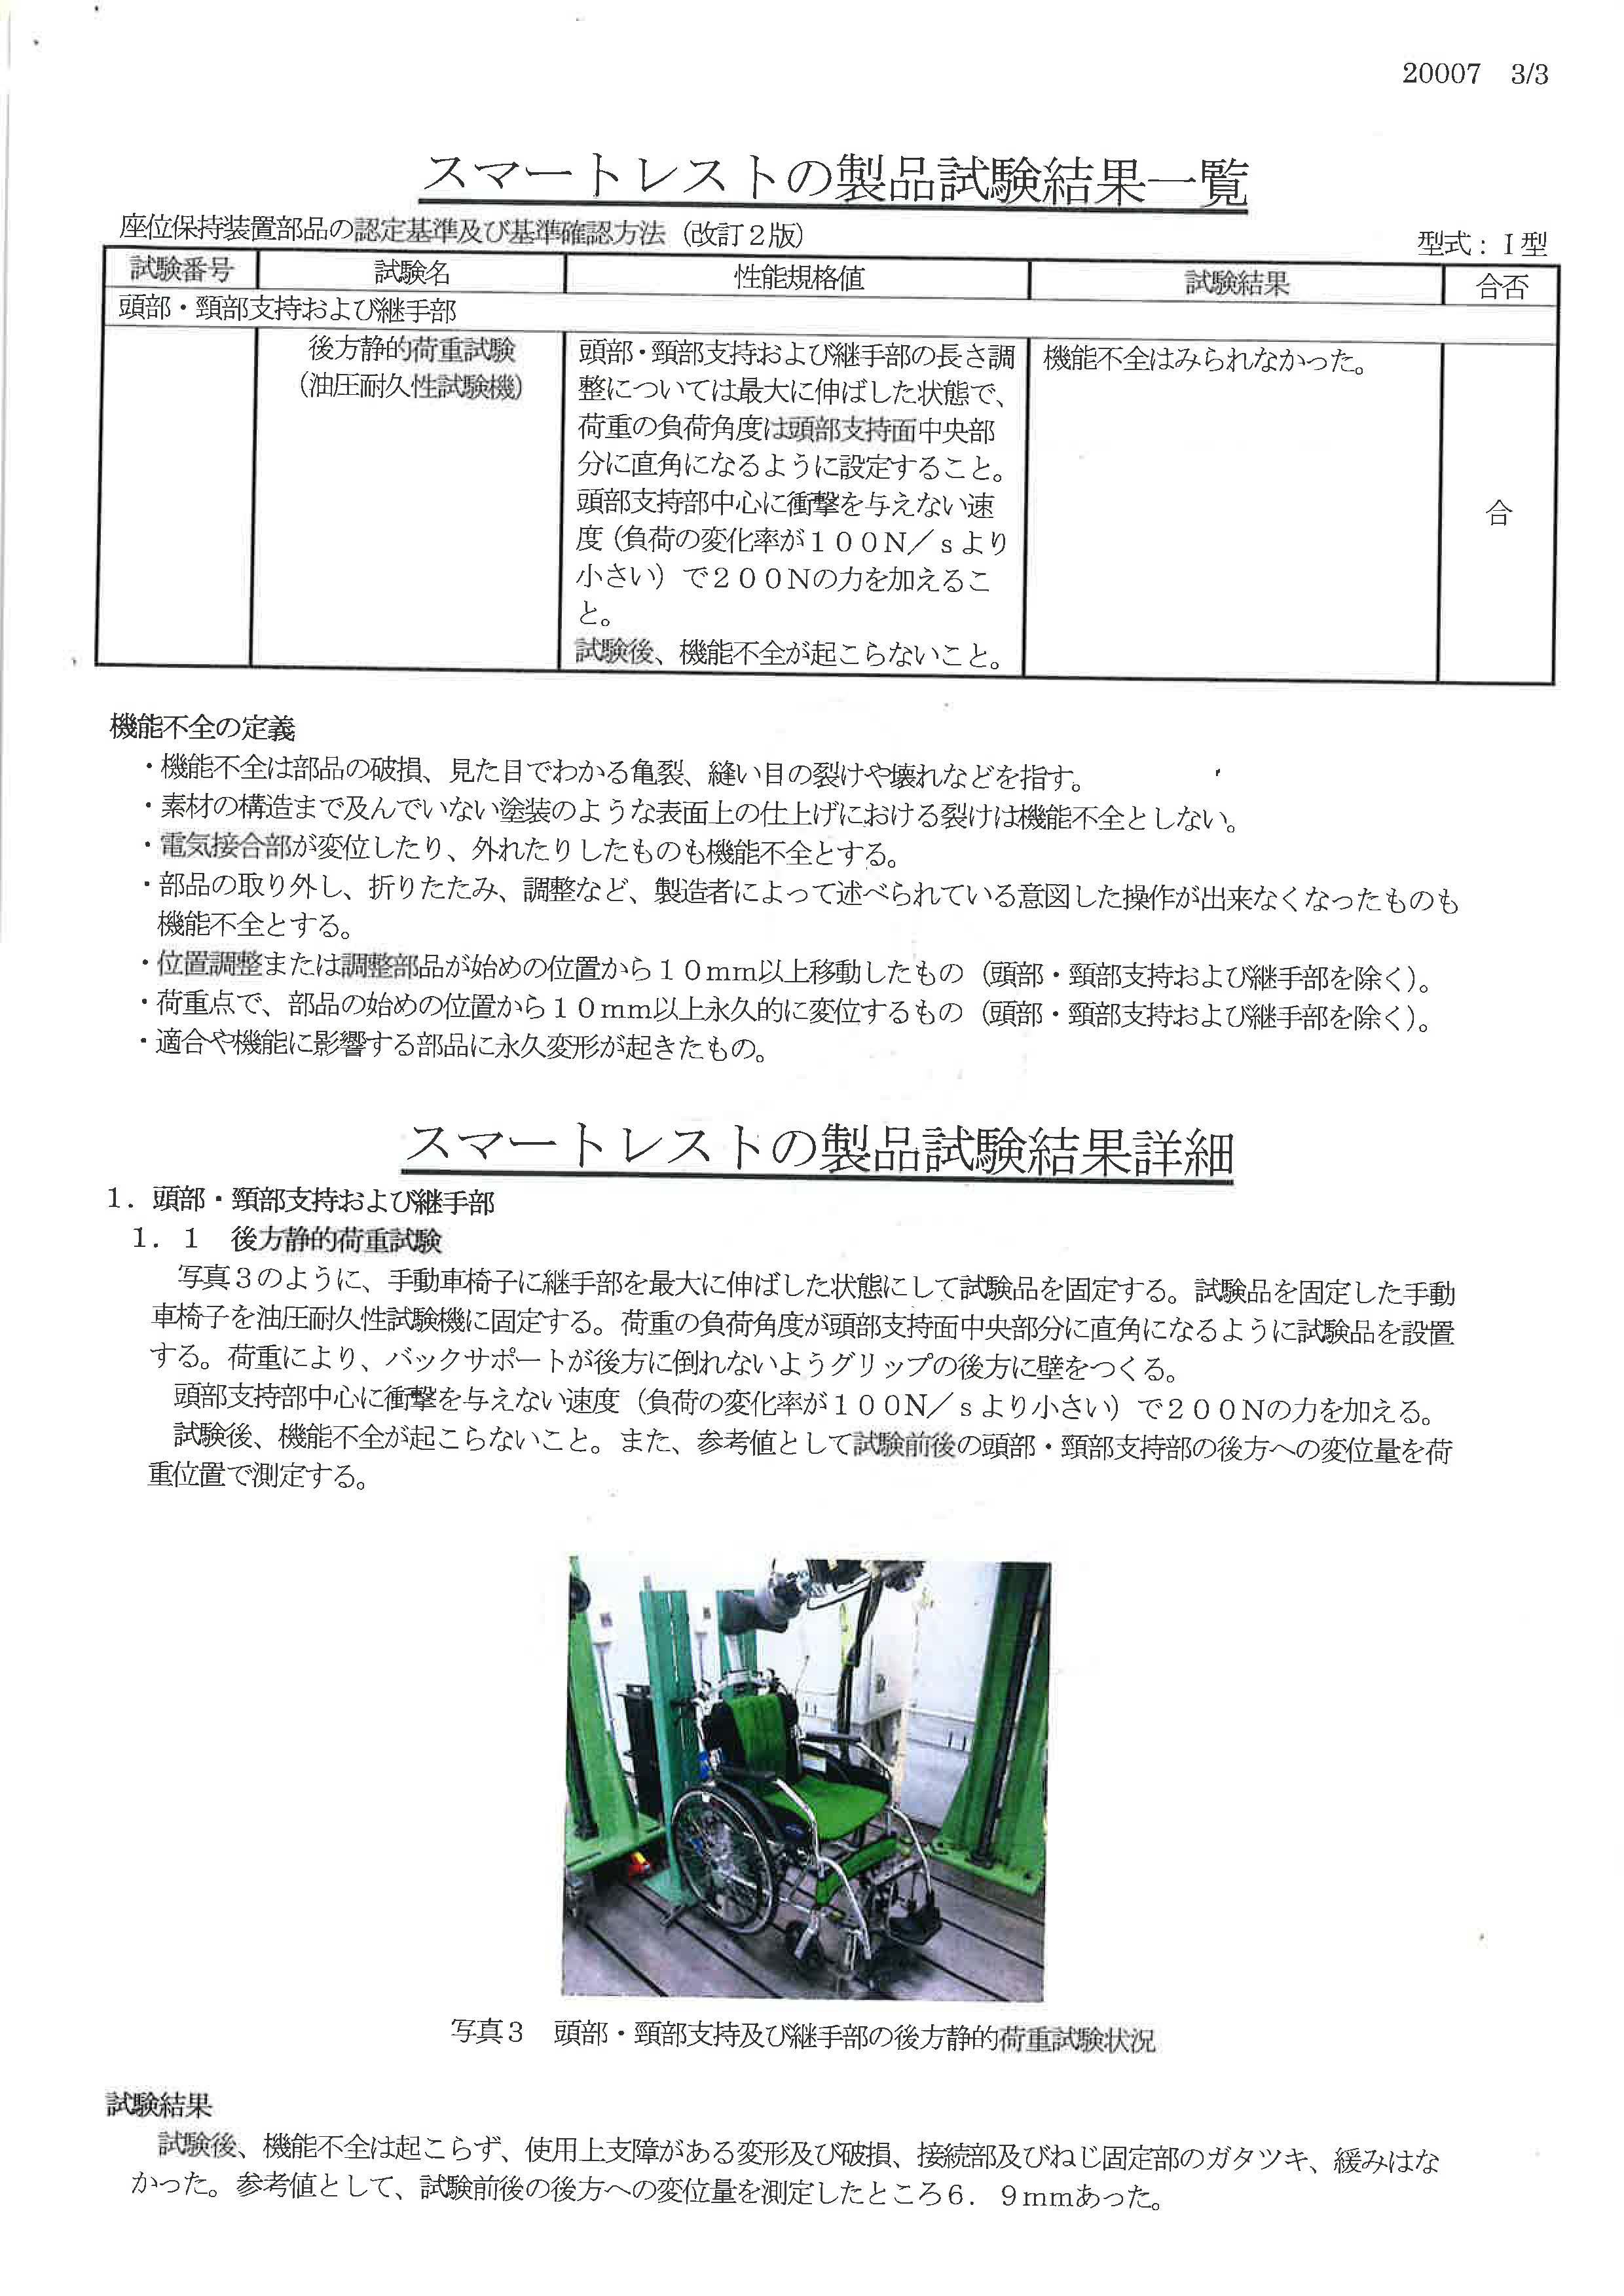 JASPEC 日本福祉用具評価センター　スマートレスト　試験報告書　３ページ目